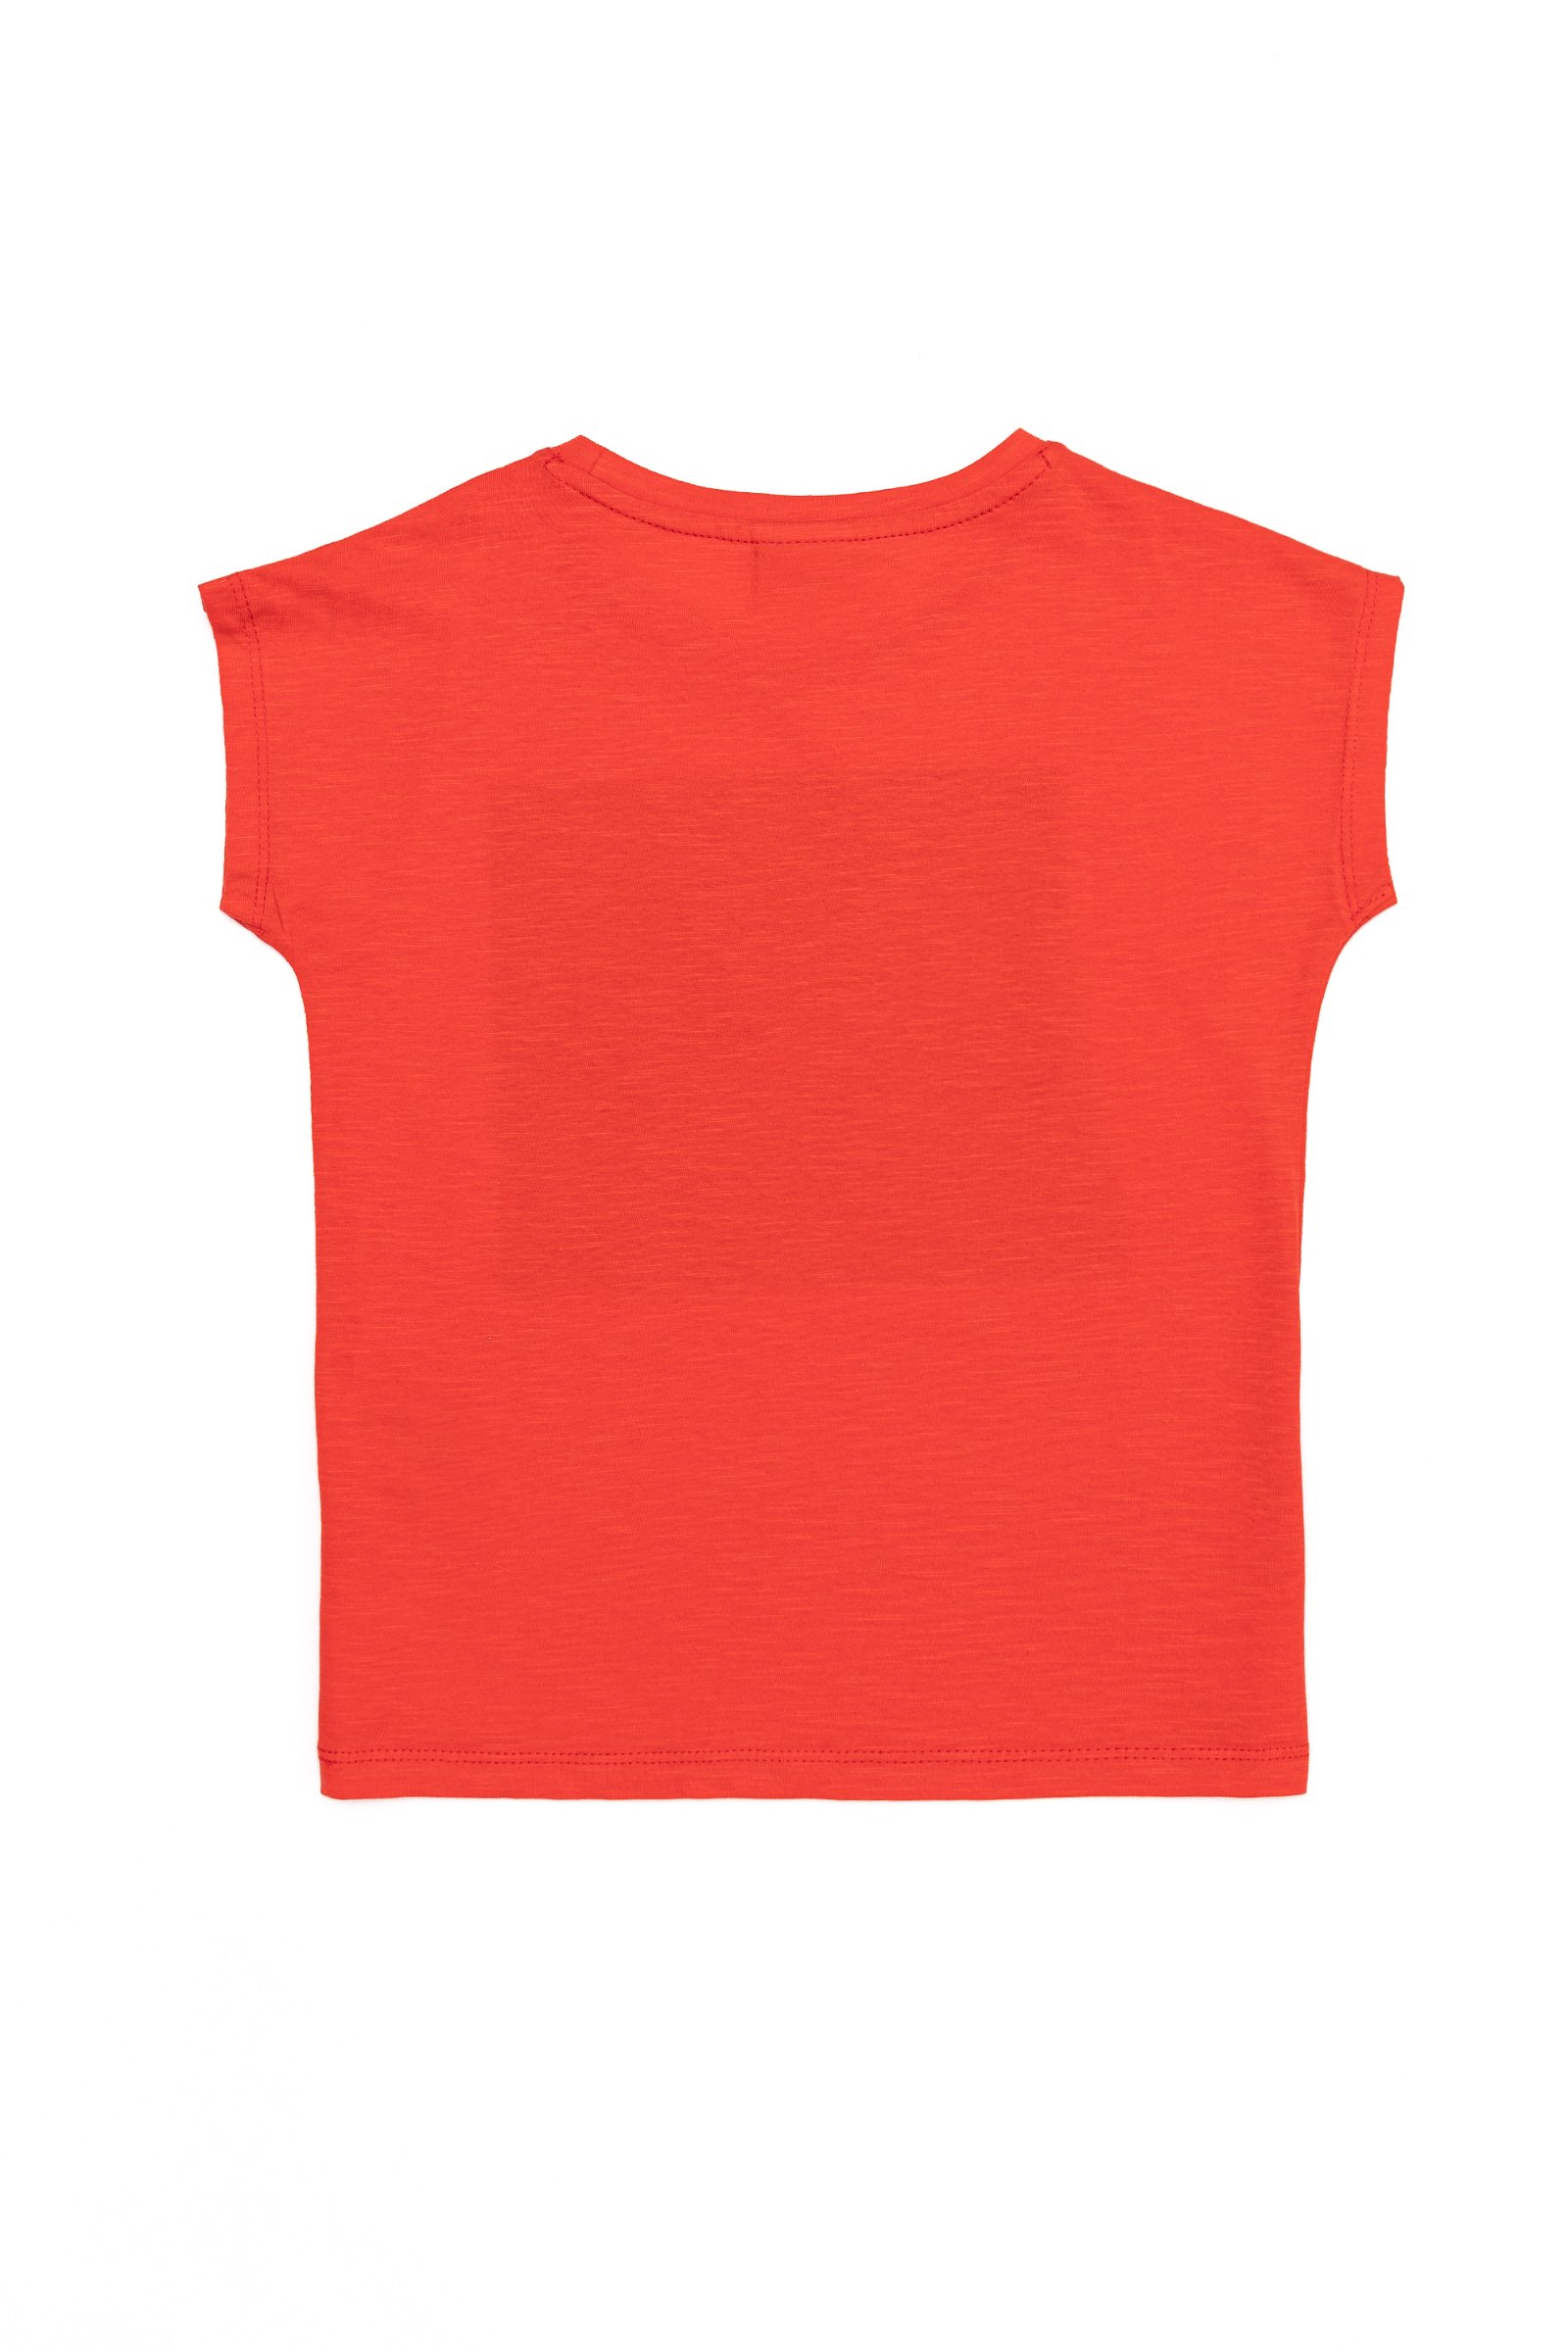 تی شرت  قرمز  استاندارد فیت  دخترانه یو اس پولو